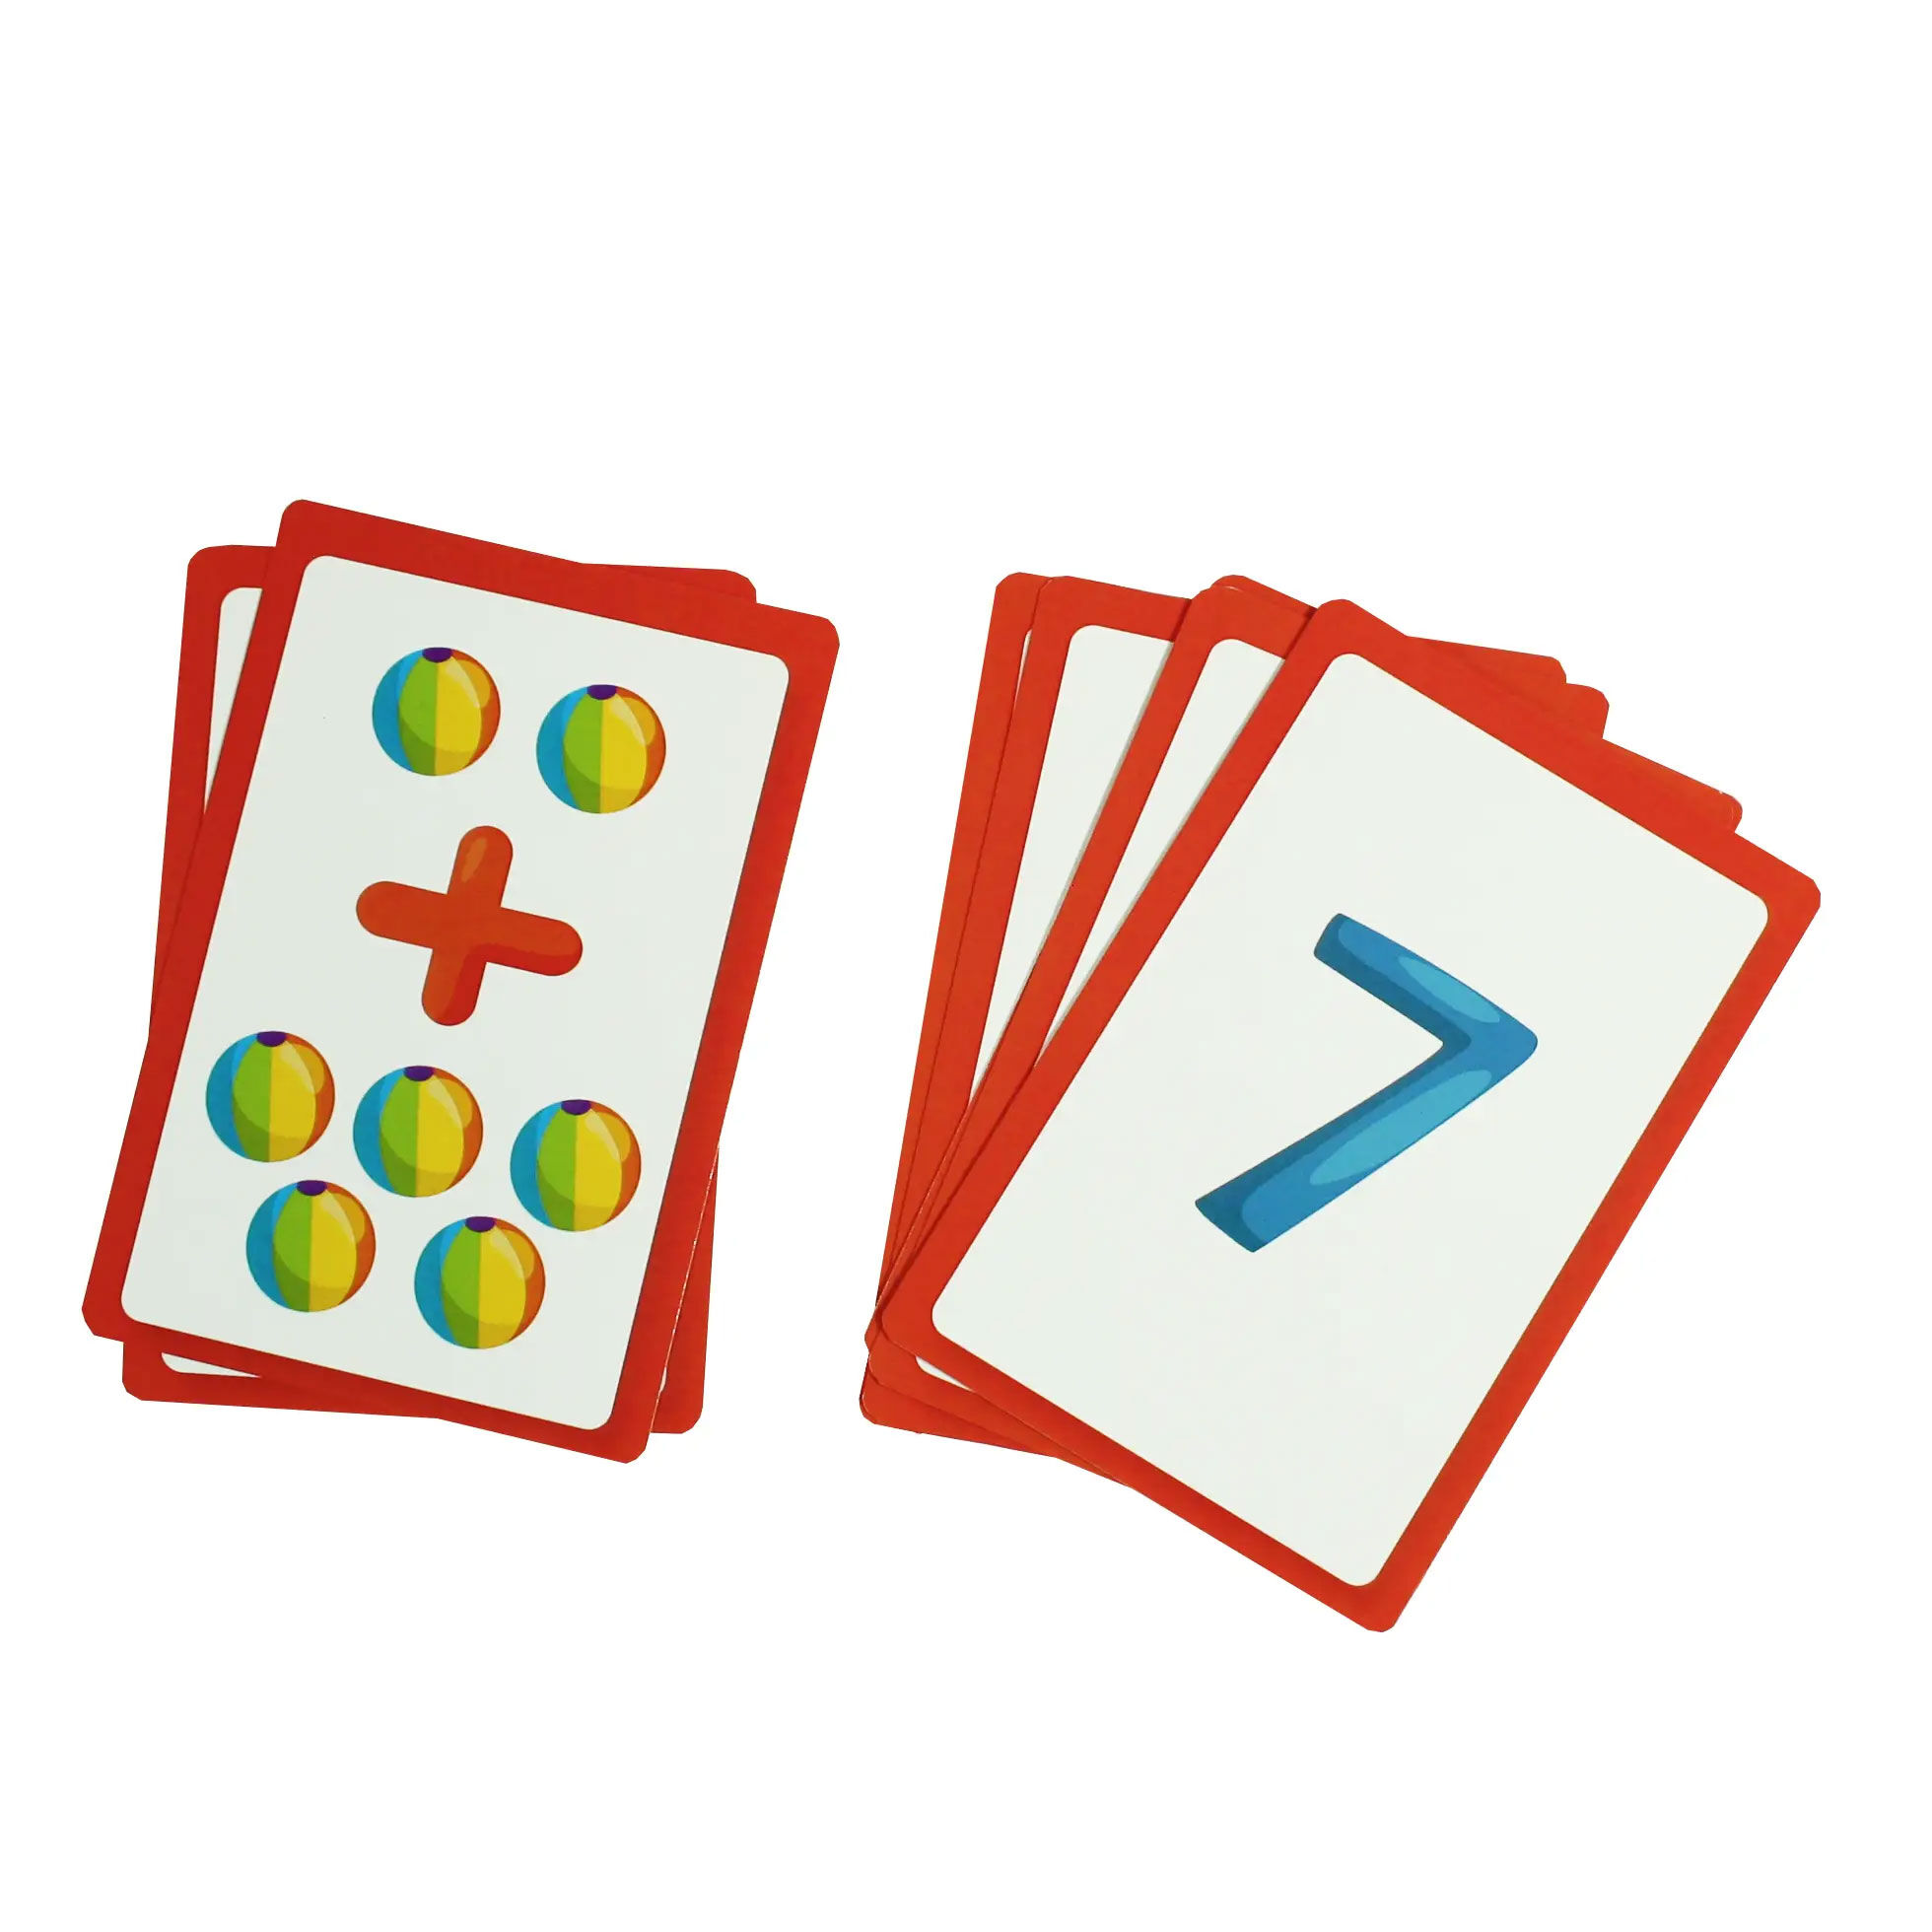 Jogos Educativos - Jogos de cartas - É legal x não é legal Em casa